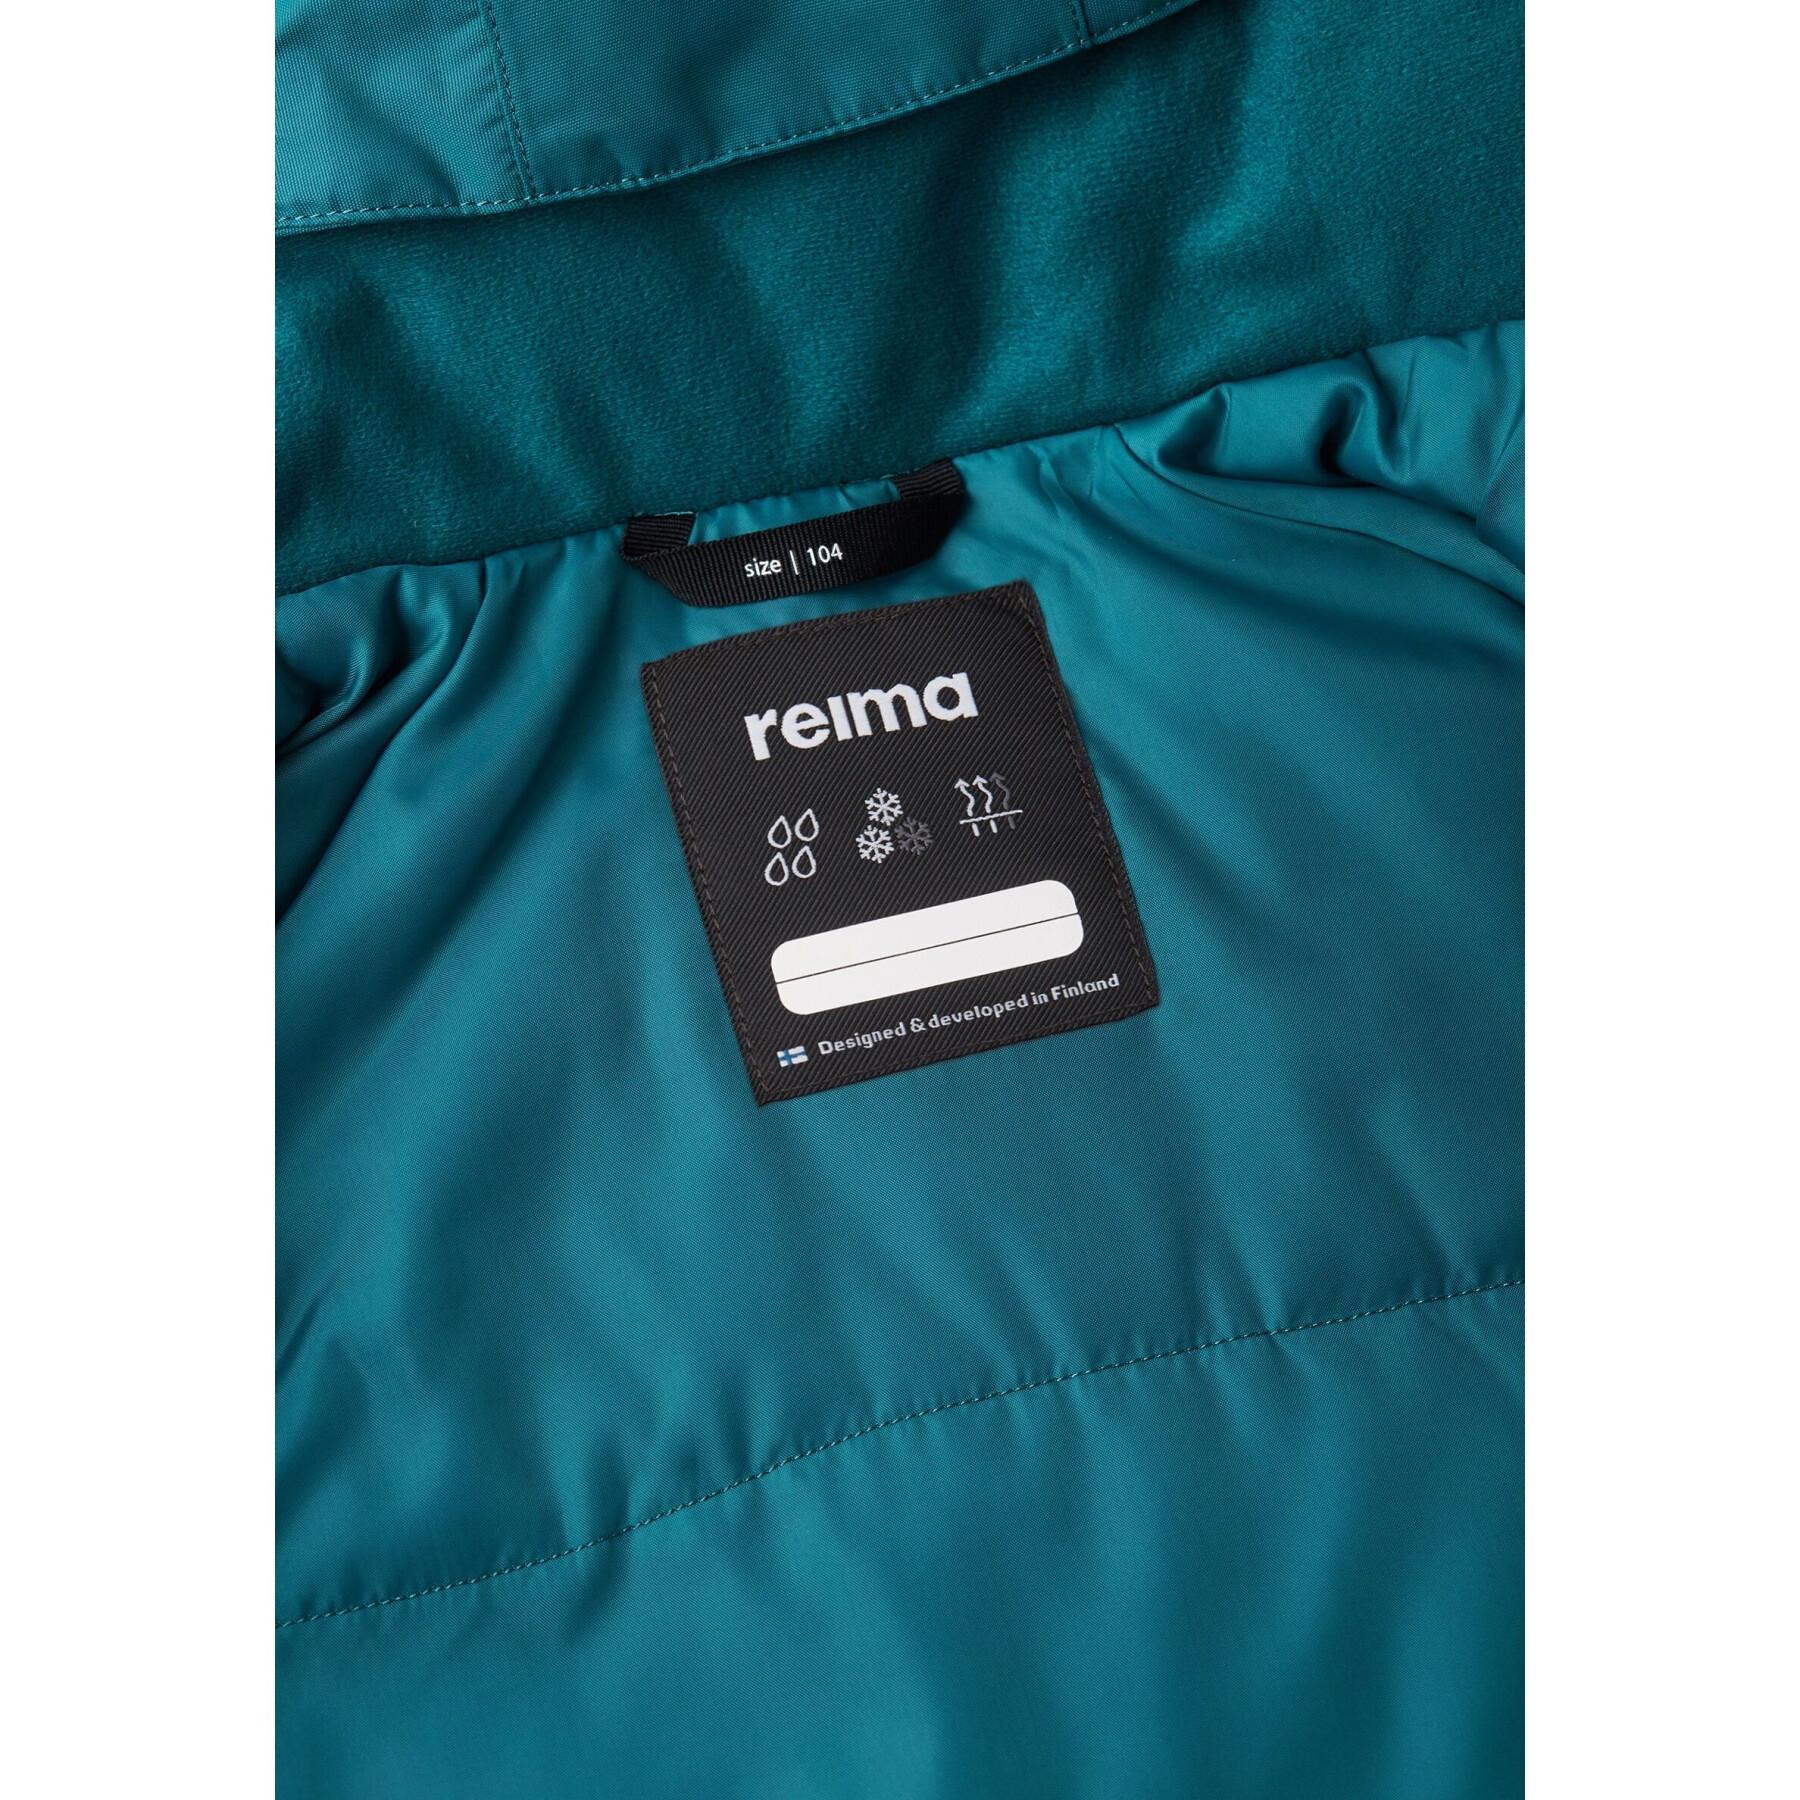 Waterproof winter jacket for children Reima Reima tec Reili